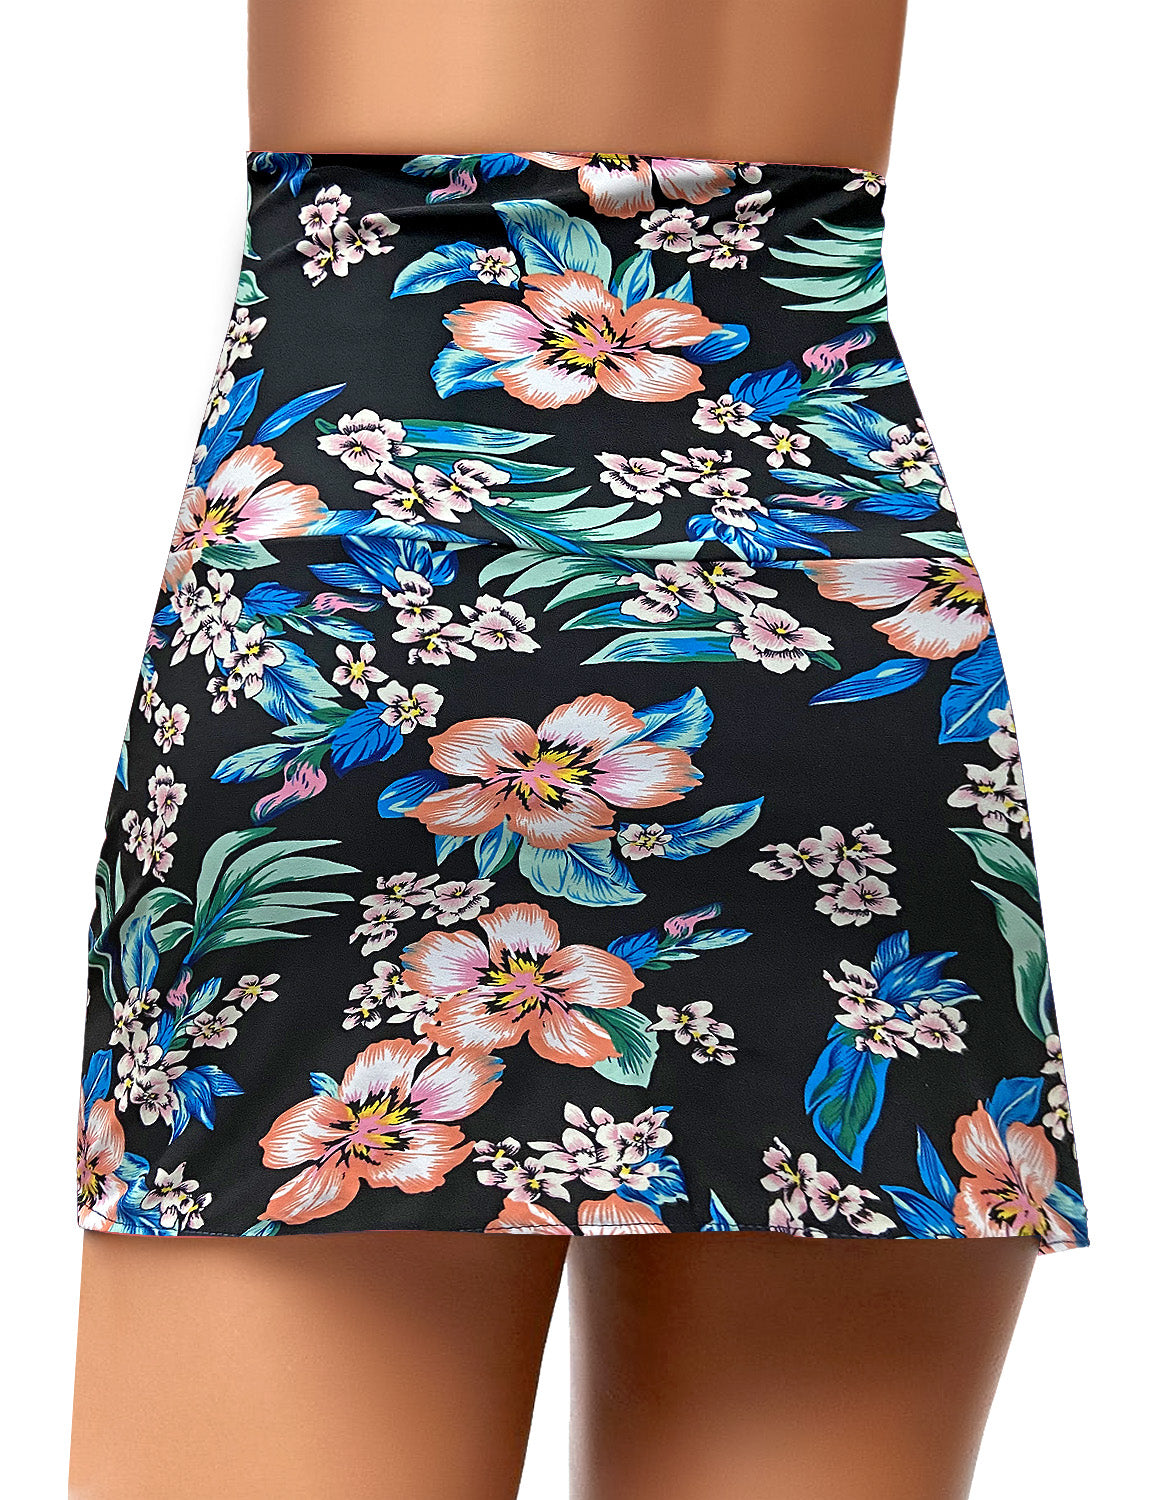 GRAPENT Women's High Waist Tulip Hem Shirring Swim Skirt Swimsuit Bikini  Bottom Black Size S : : Clothing & Accessories